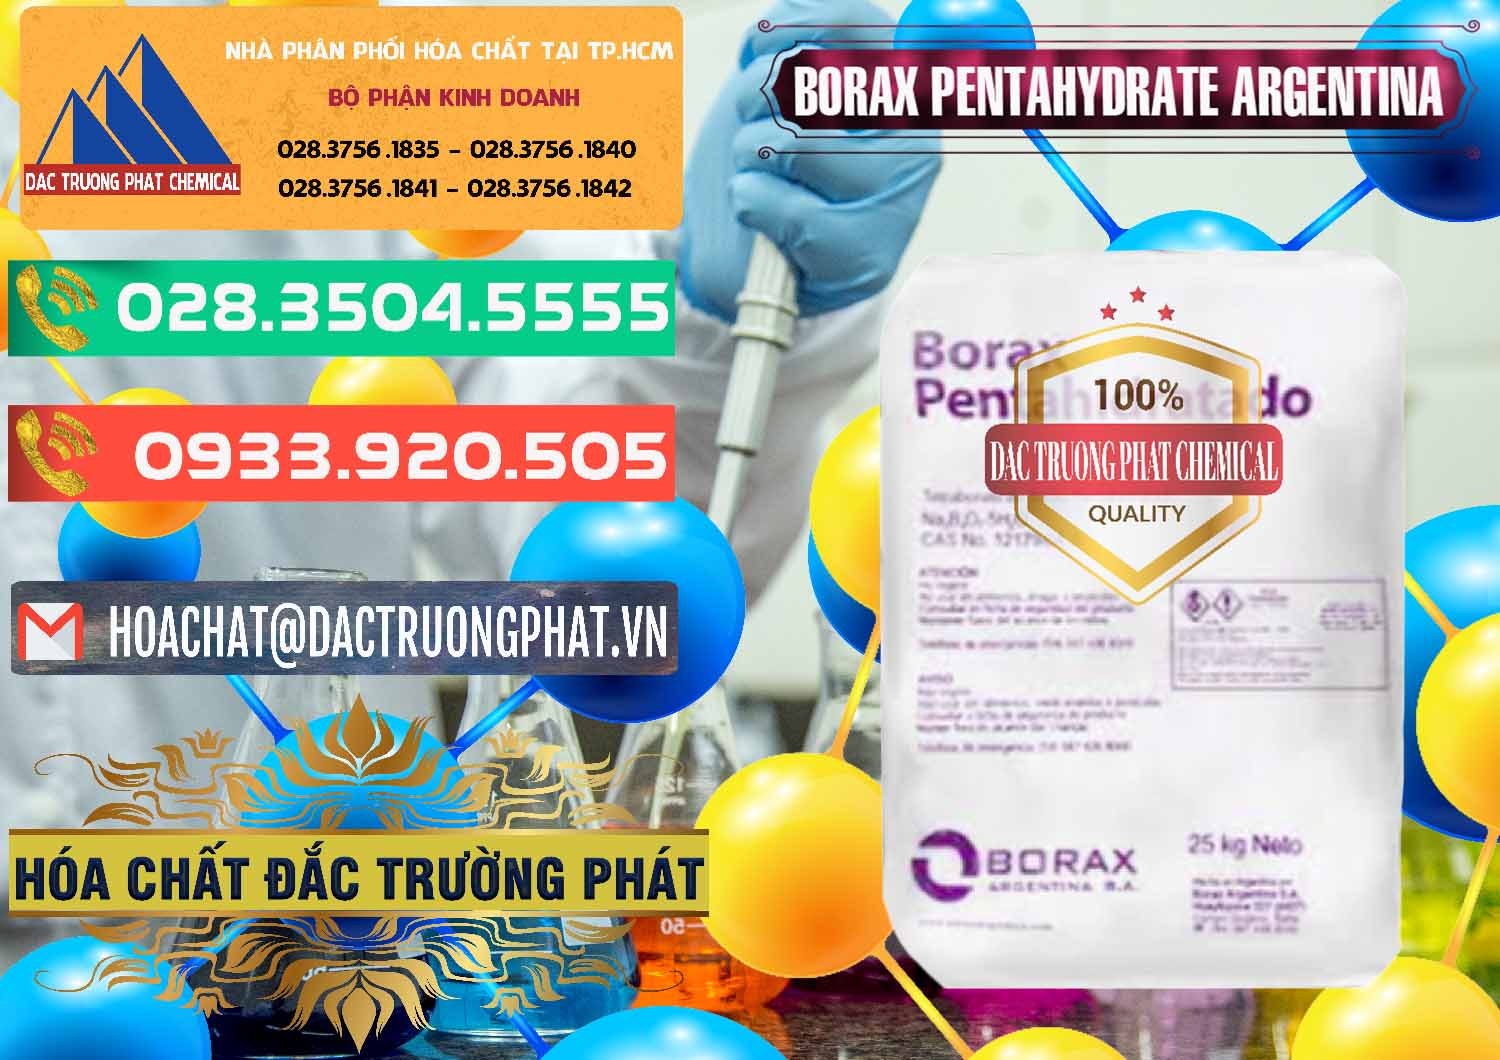 Nơi nhập khẩu và bán Borax Pentahydrate Argentina - 0447 - Nhà cung cấp và bán hóa chất tại TP.HCM - congtyhoachat.com.vn